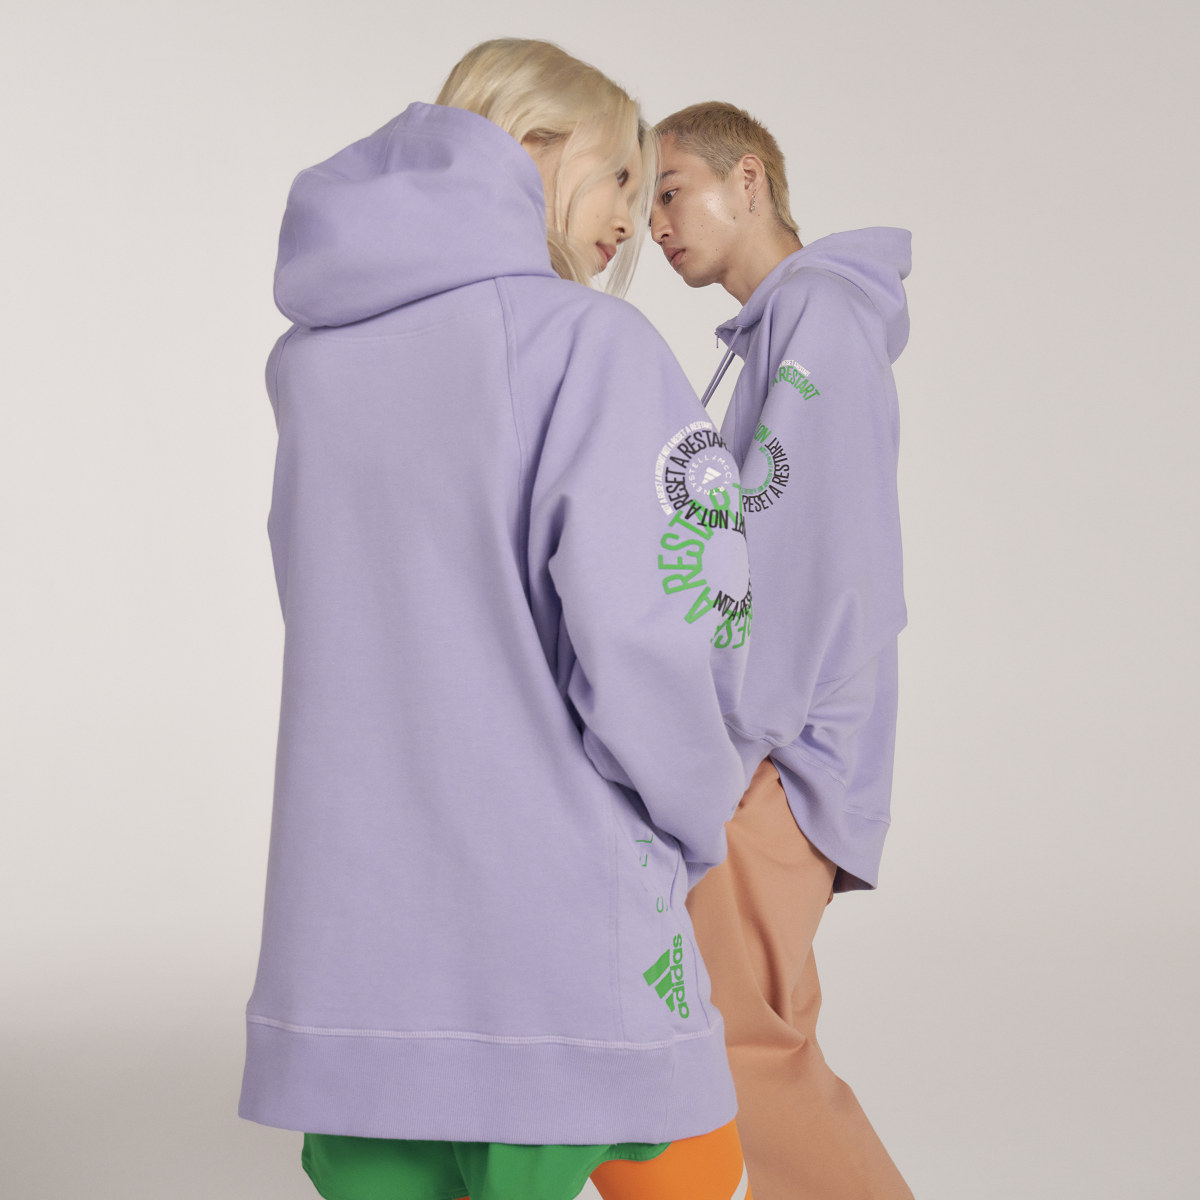 Adidas by Stella McCartney Pull On- Gender Neutral. 4